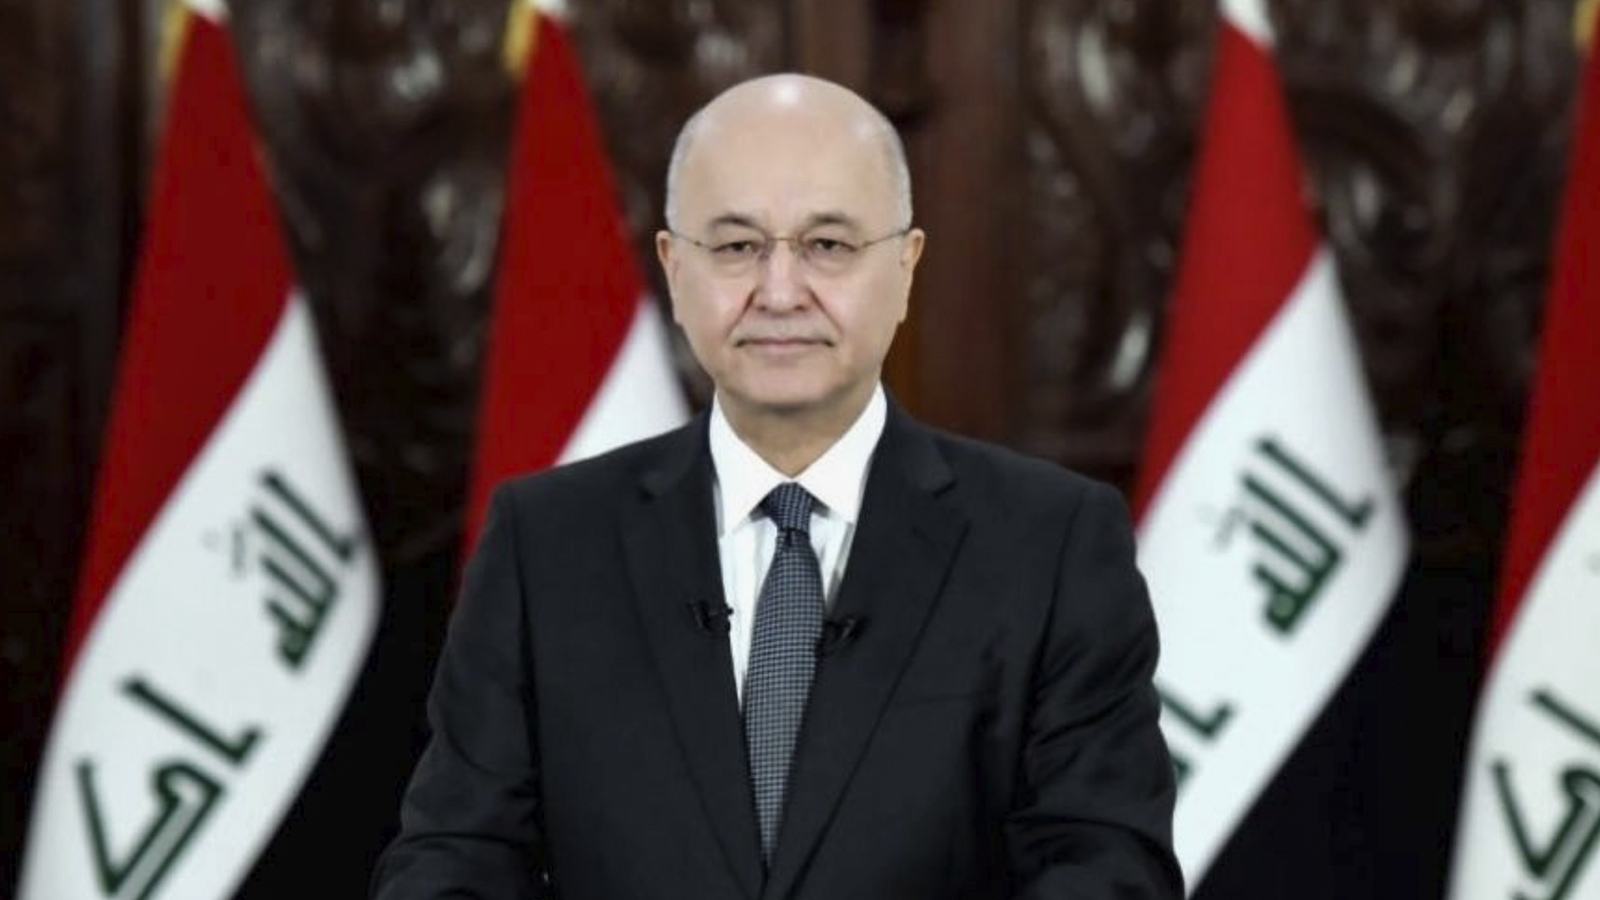 ‪الرئيس العراقي طلب من مجلس النواب تحديد الكتلة النيابية الأكثر عددا ليكلف مرشحها بتشكيل الحكومة المقبلة‬ (الجزيرة)